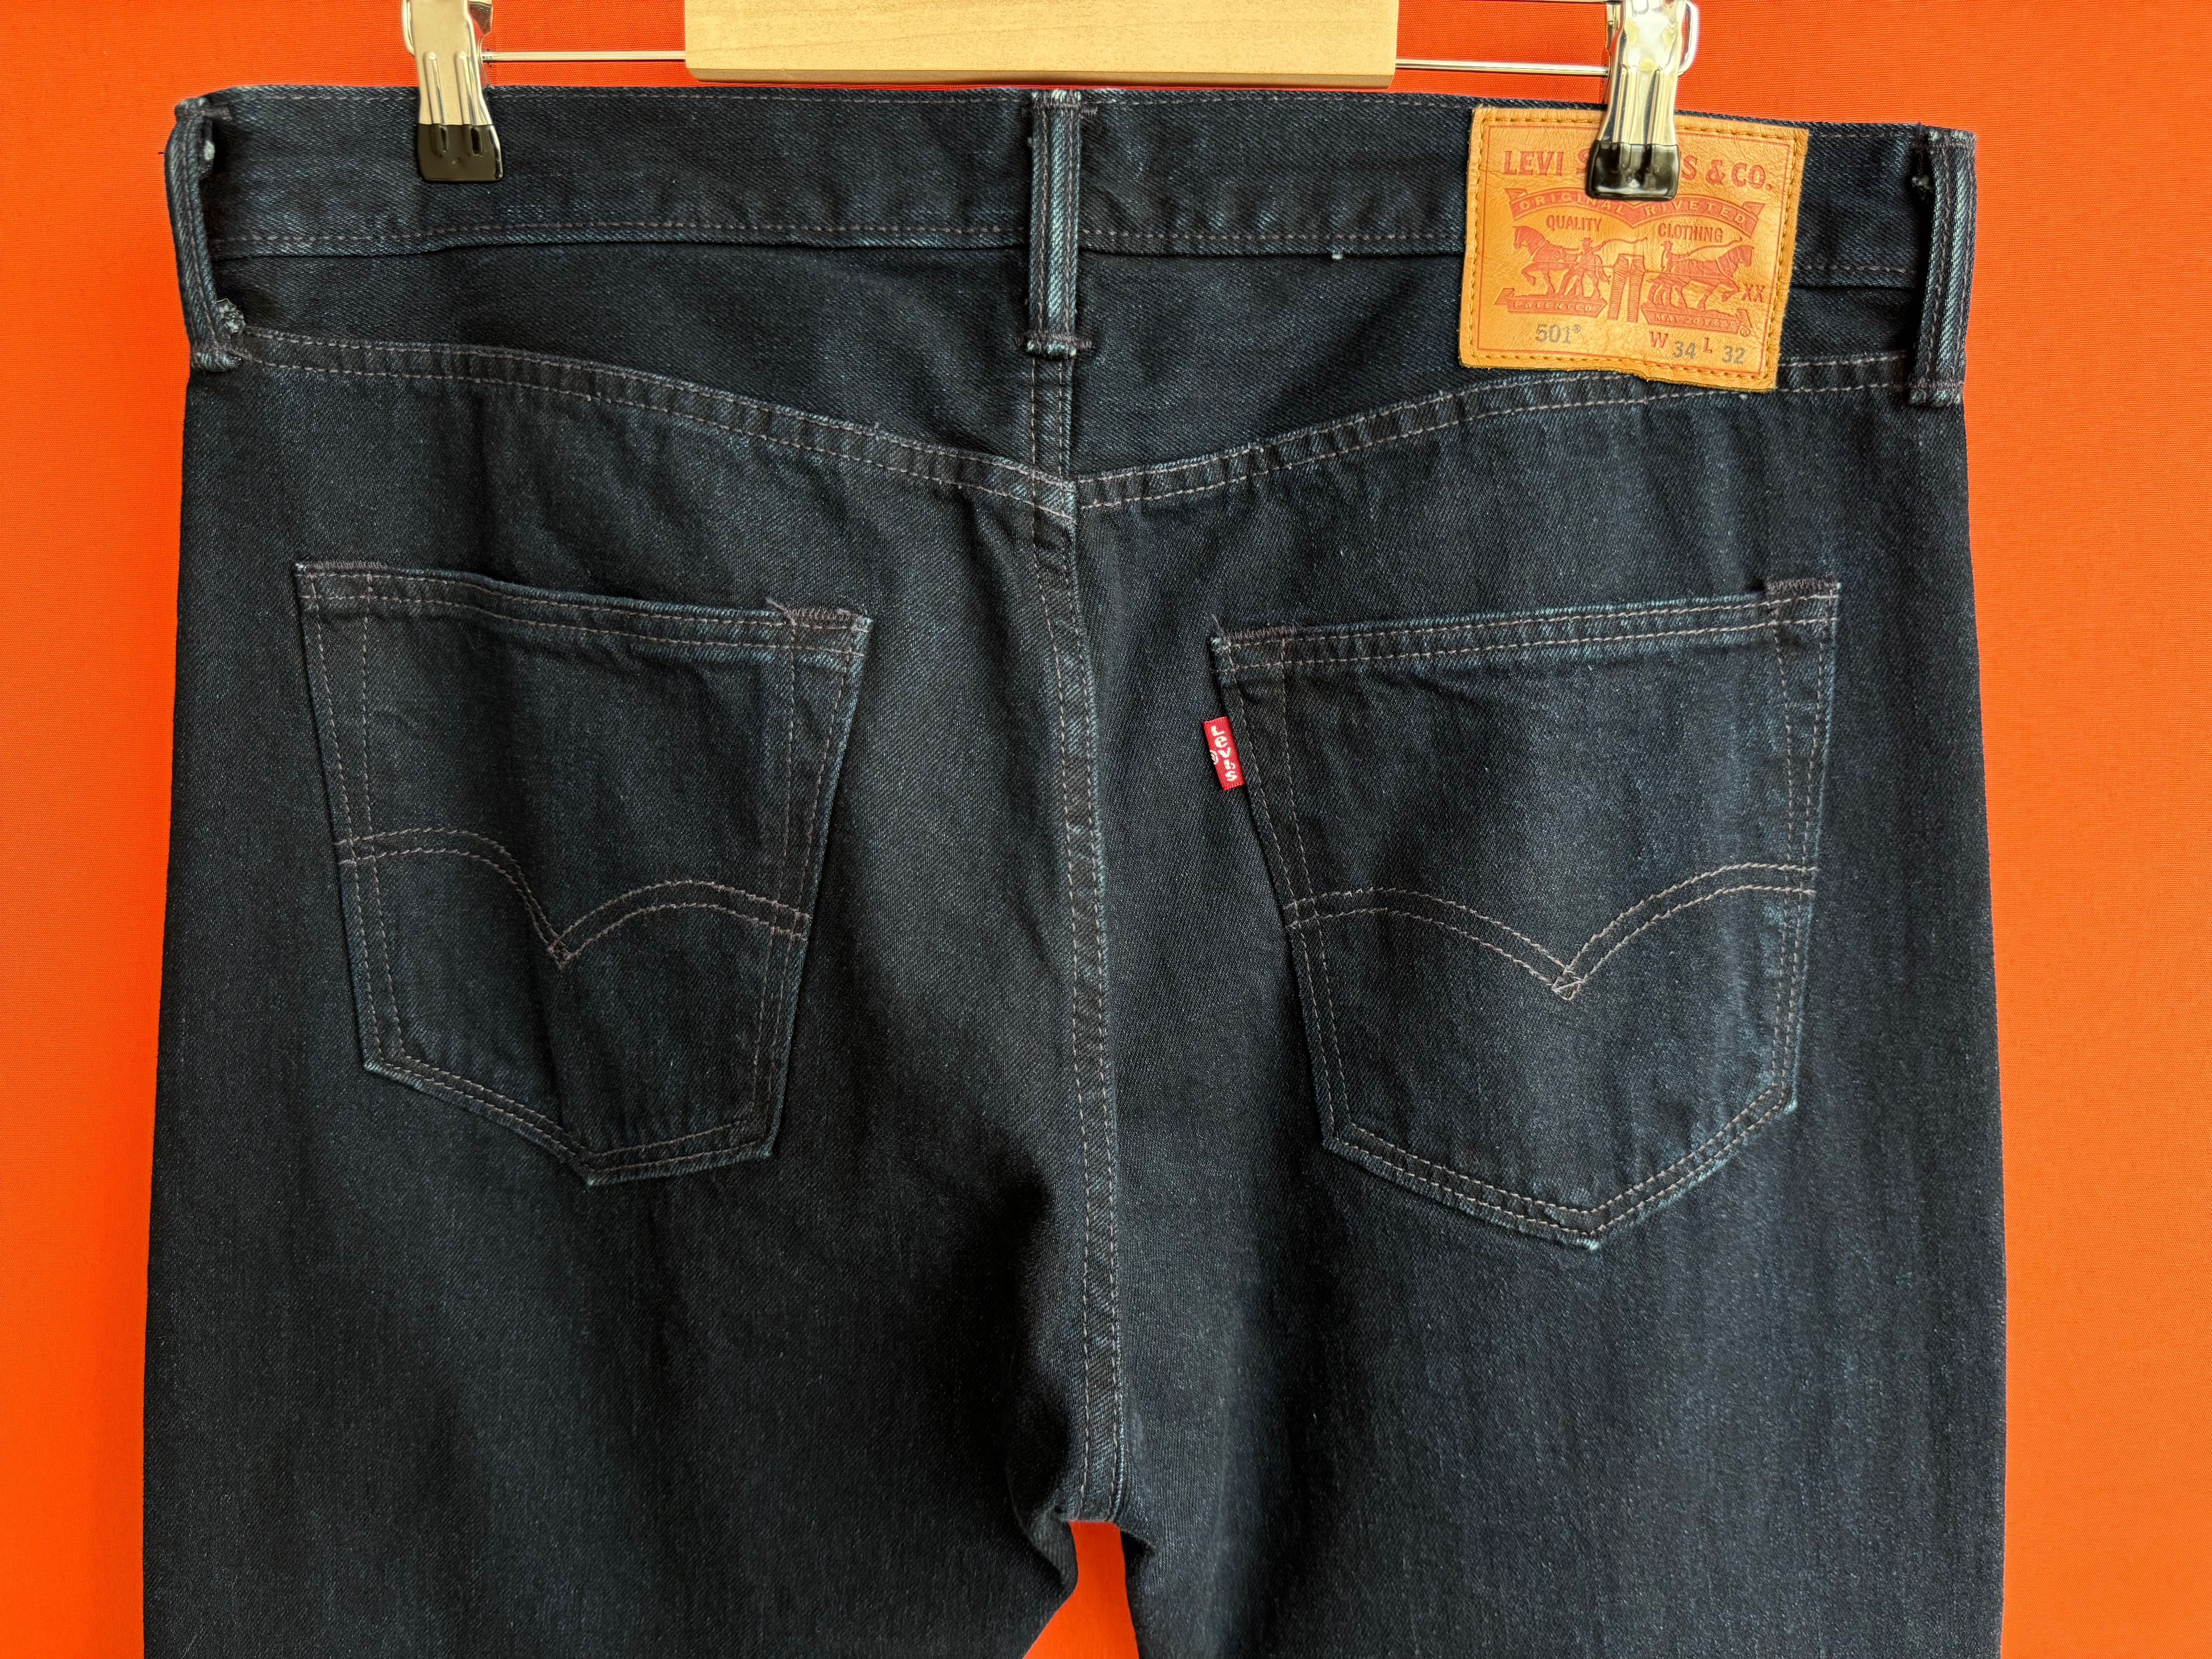 ??? Levis Levi’s 501 оригинал мужские классические джинсы размер 34